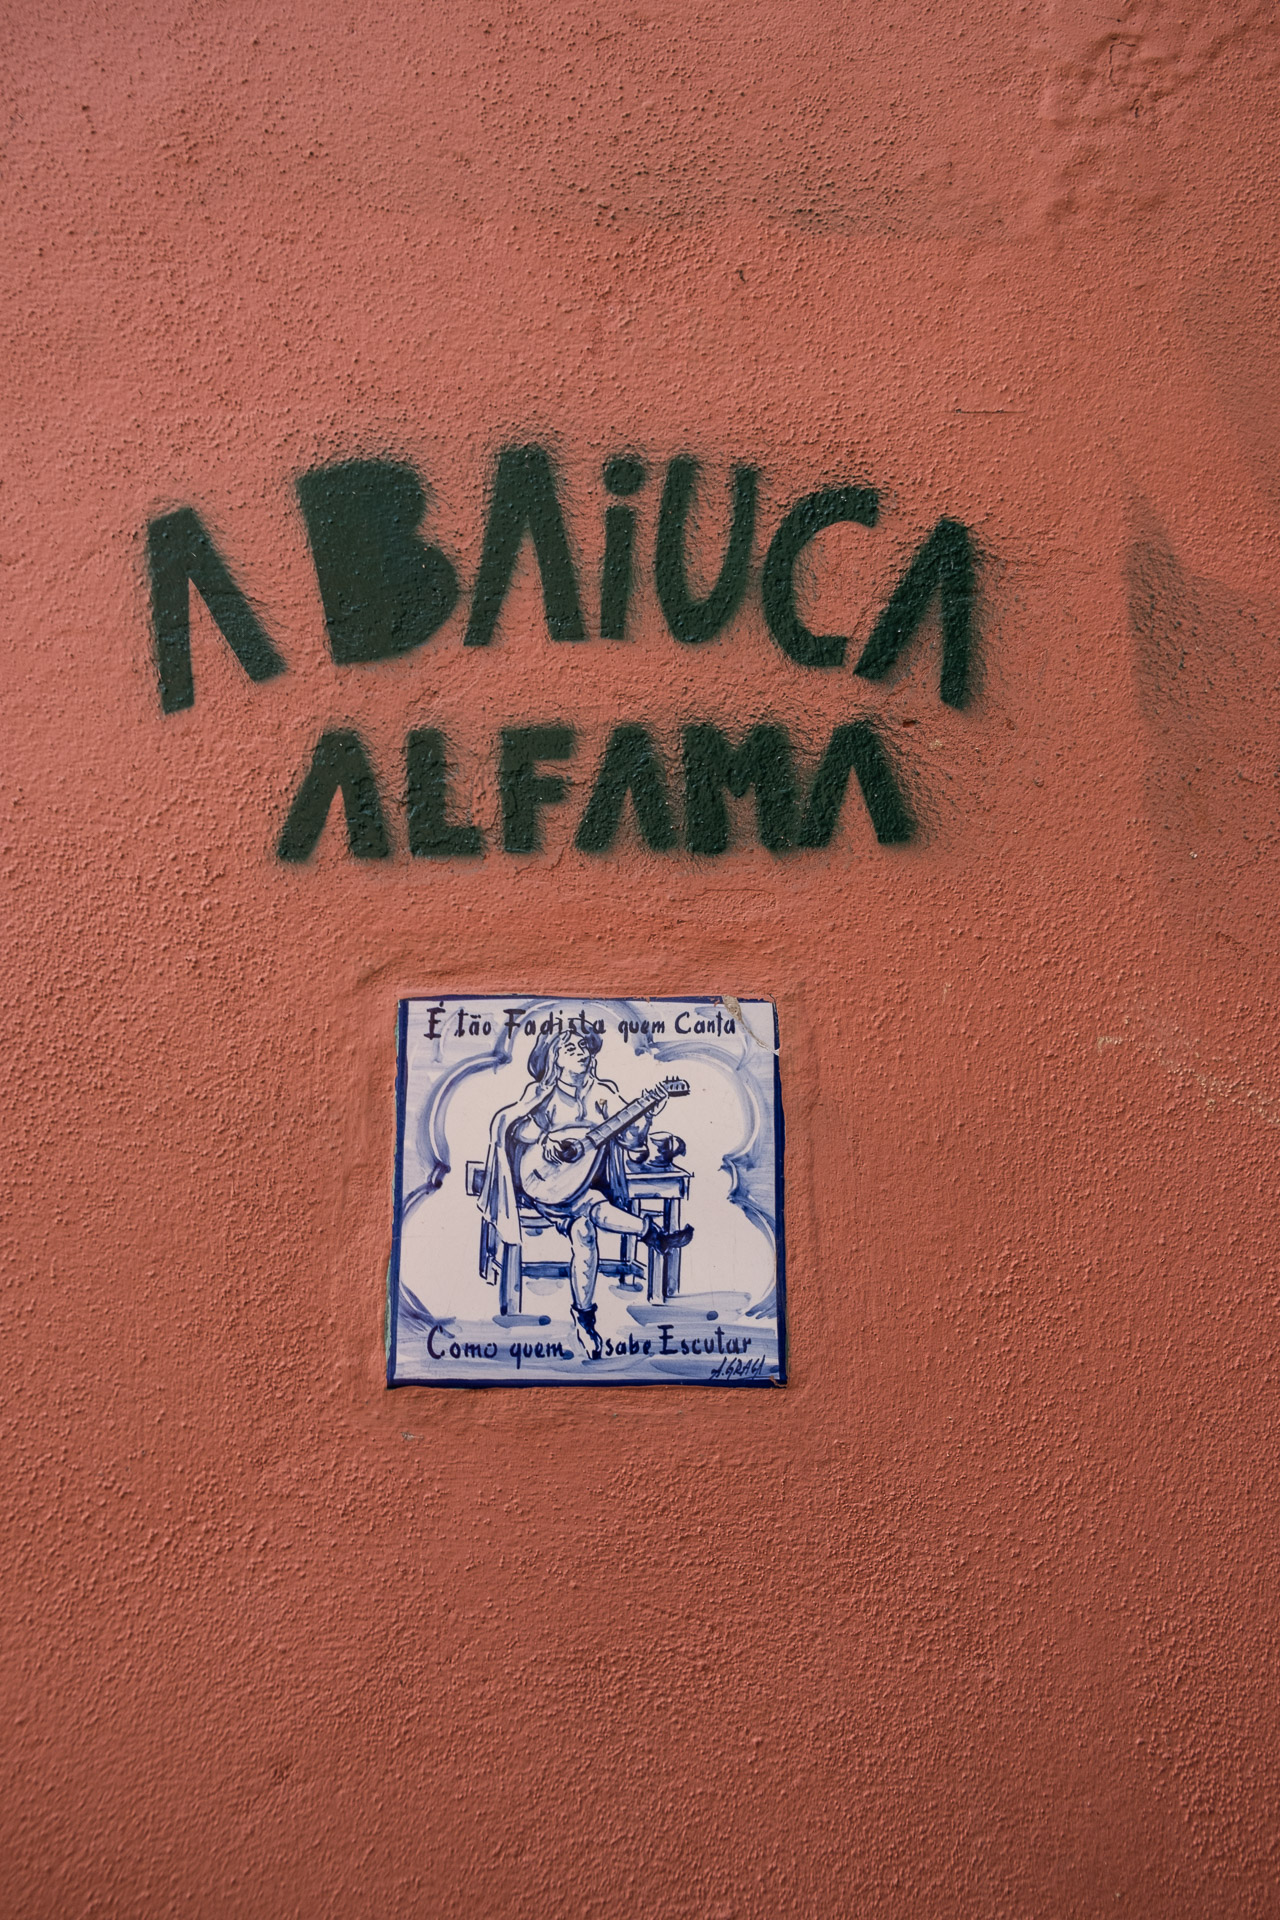 fado streetart in lisbon